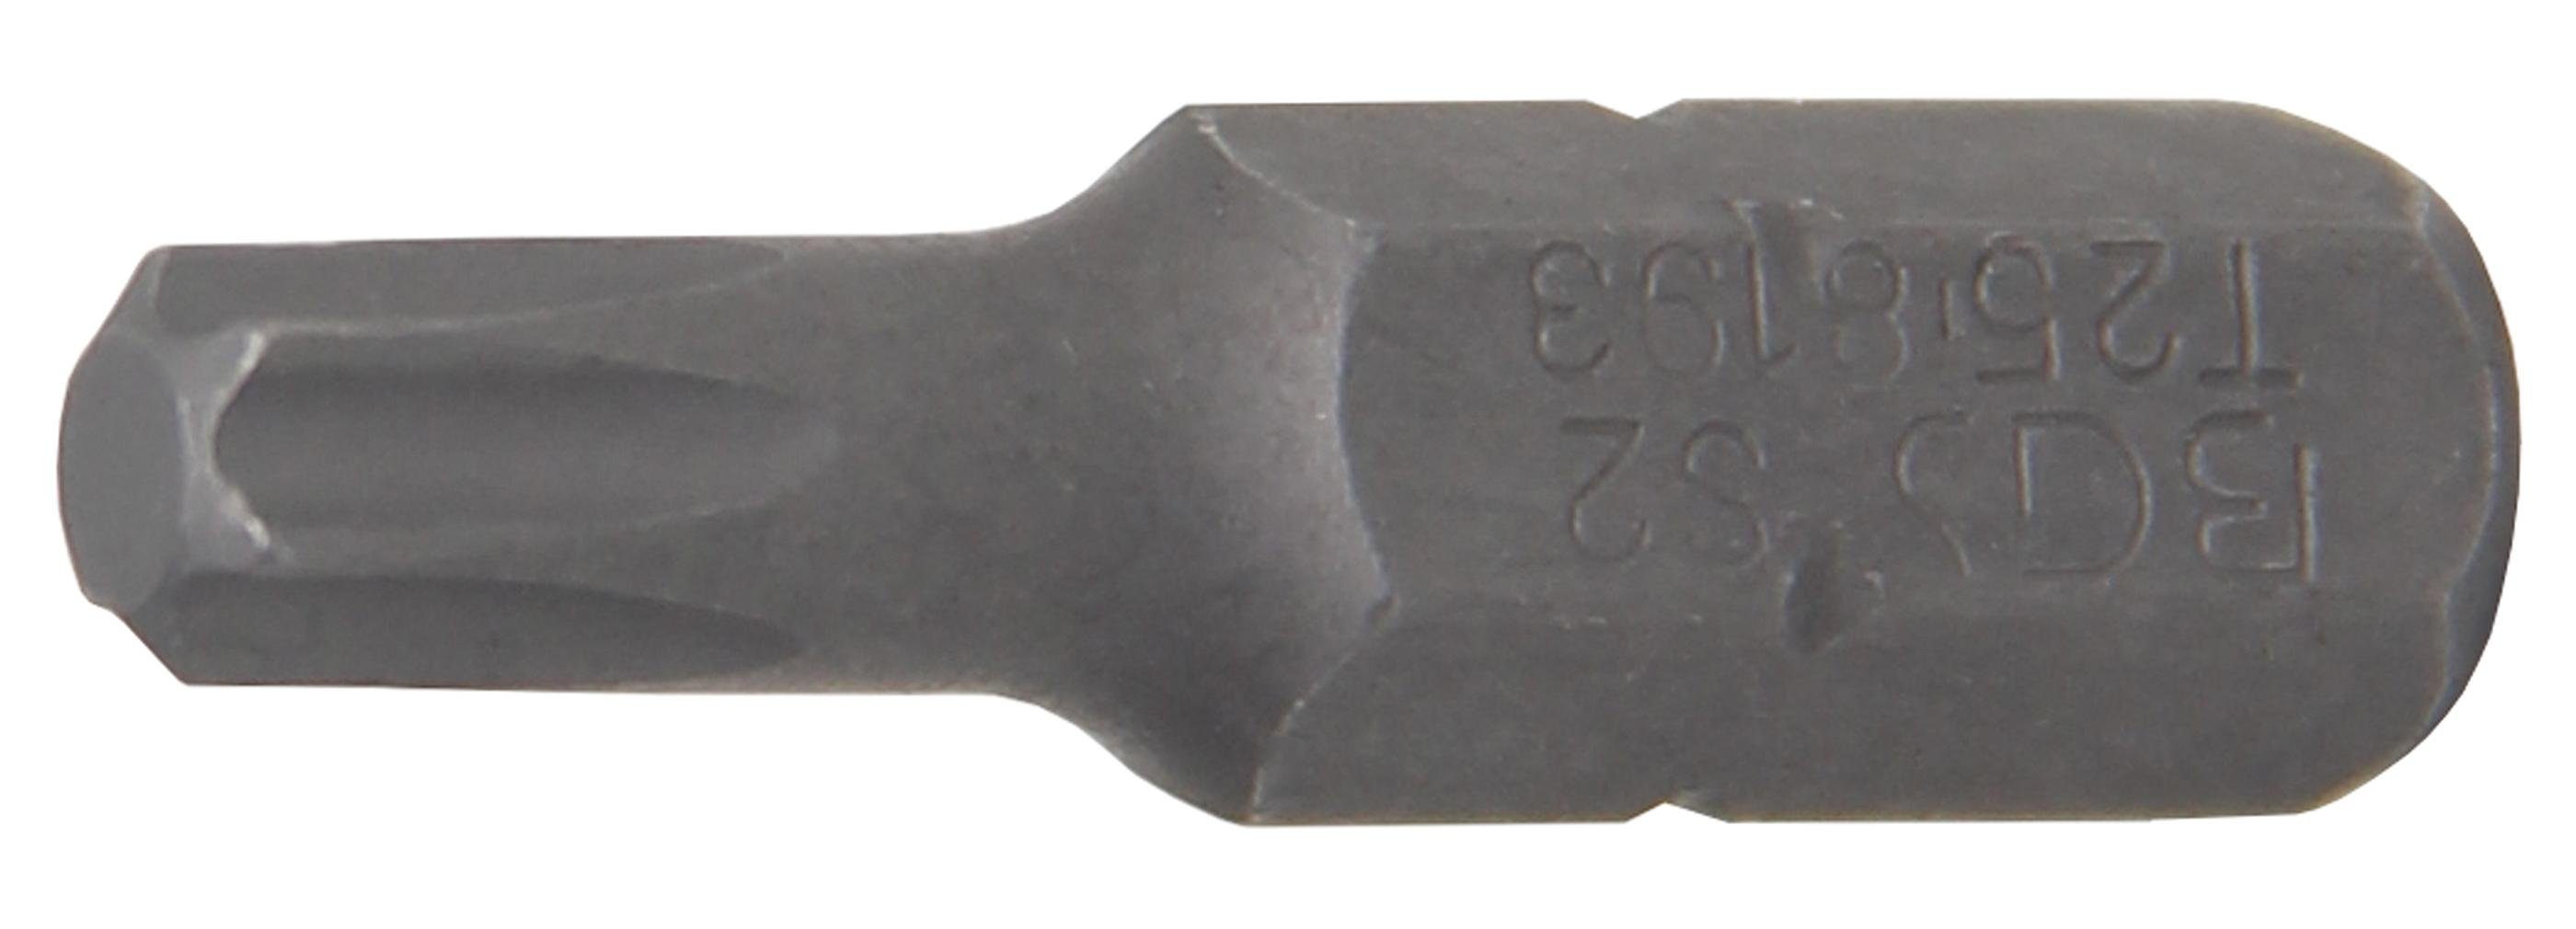 BGS technic Bit-Schraubendreher Bit, Antrieb Außensechskant 6,3 mm (1/4), T-Profil (für Torx) T25